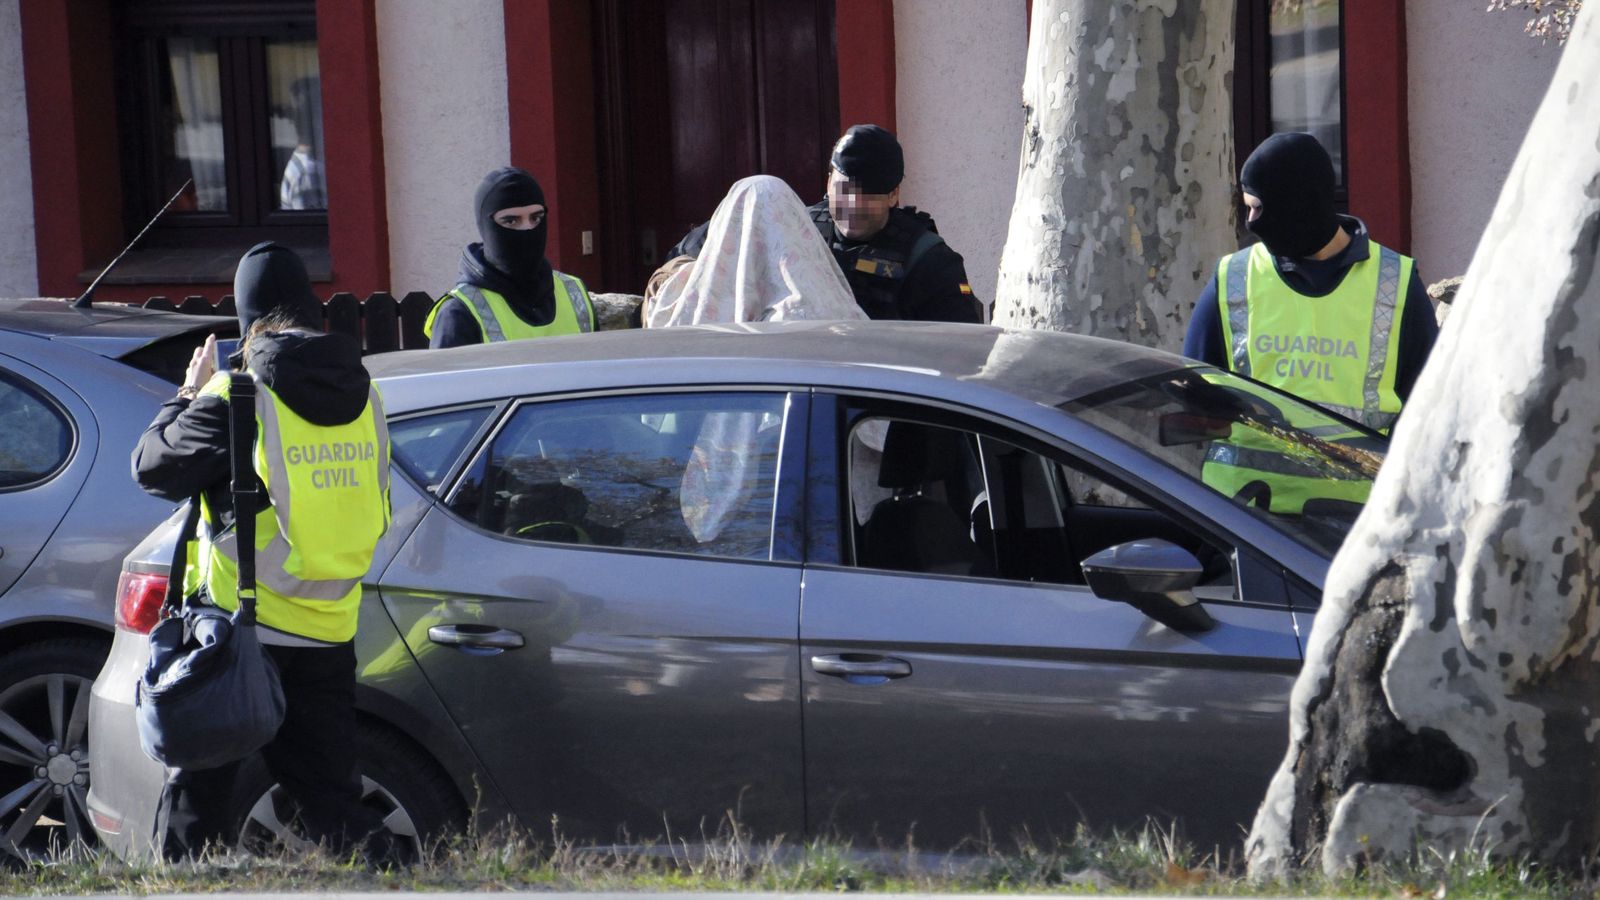 Foto: La Guardia Civil detuvo el pasado 13 de diciembre a un exmiembro de los GAL dispuesto a cometer un atentado yihadista. (EFE)